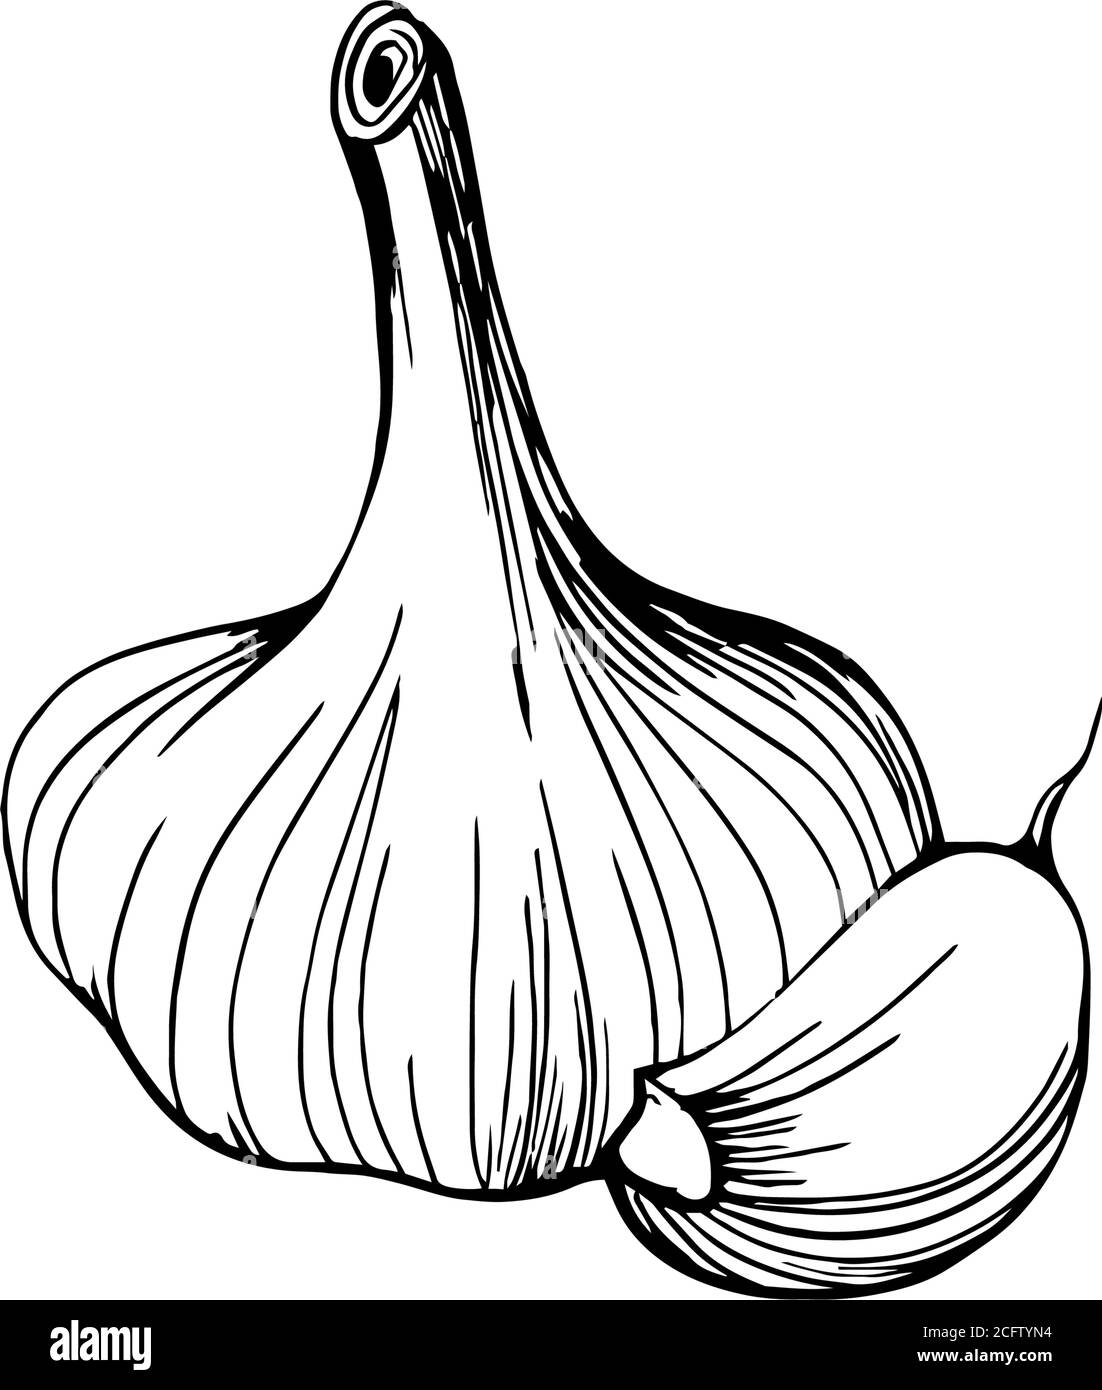 Testa all'aglio. Rafforzare il sistema immunitario Illustrazione Vettoriale